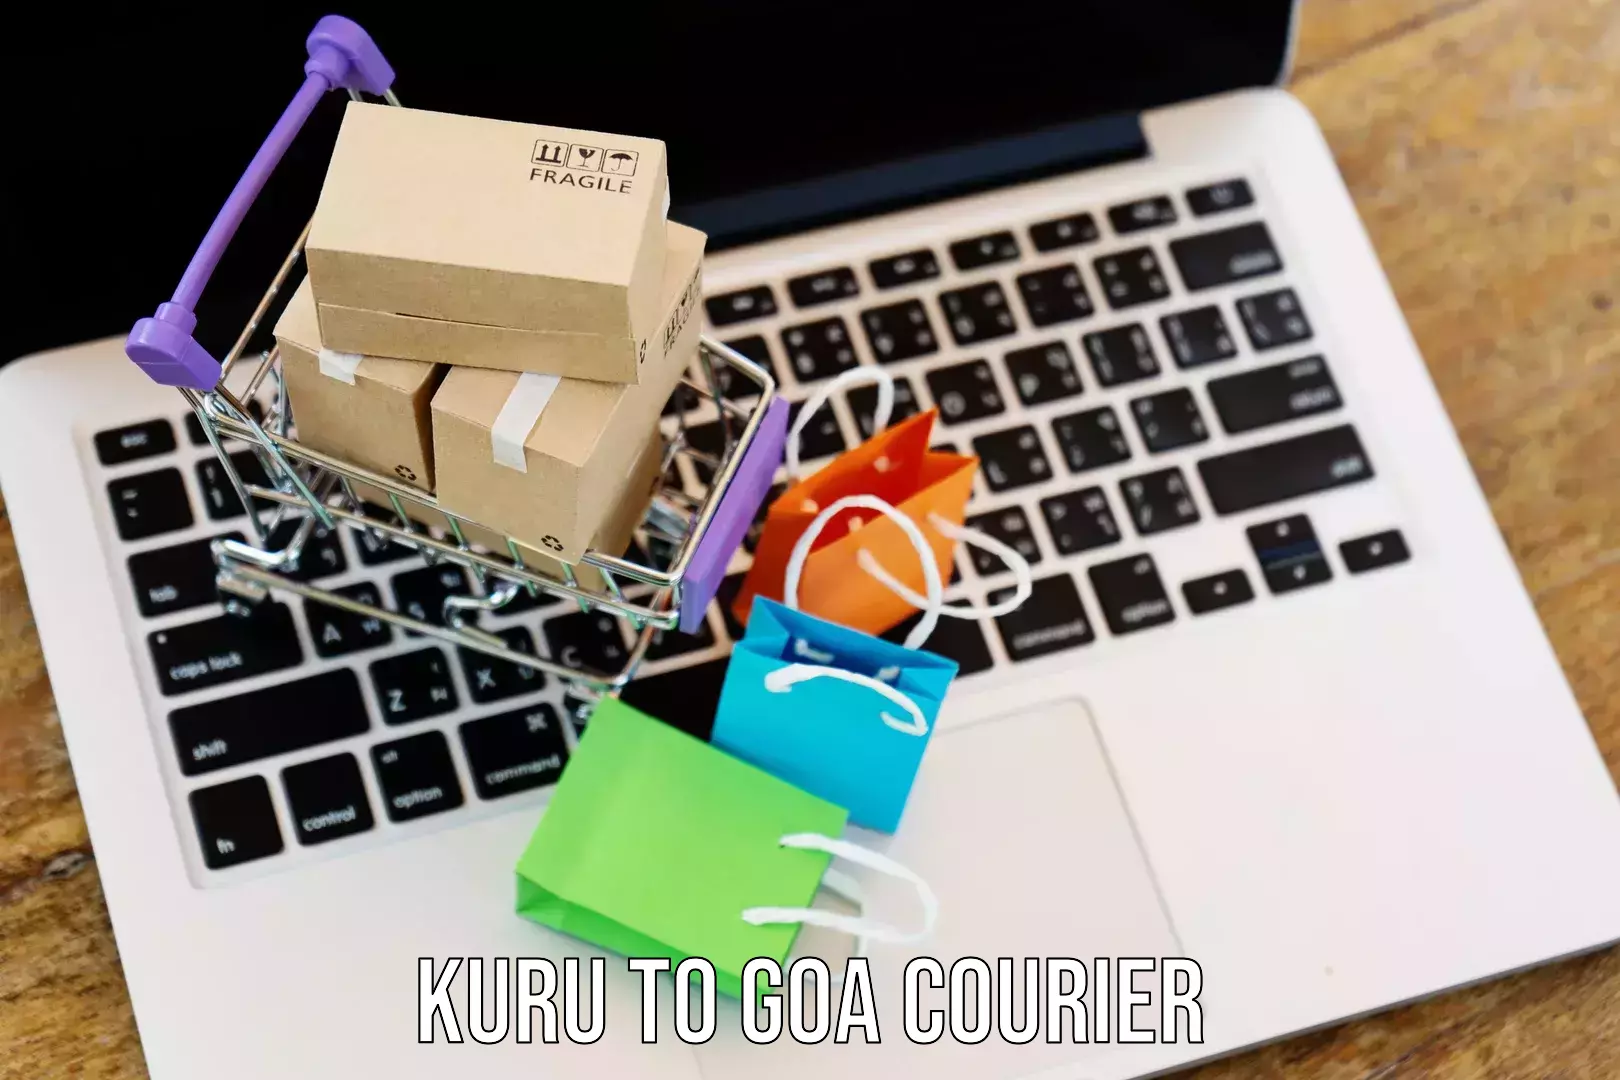 Local courier options Kuru to Goa